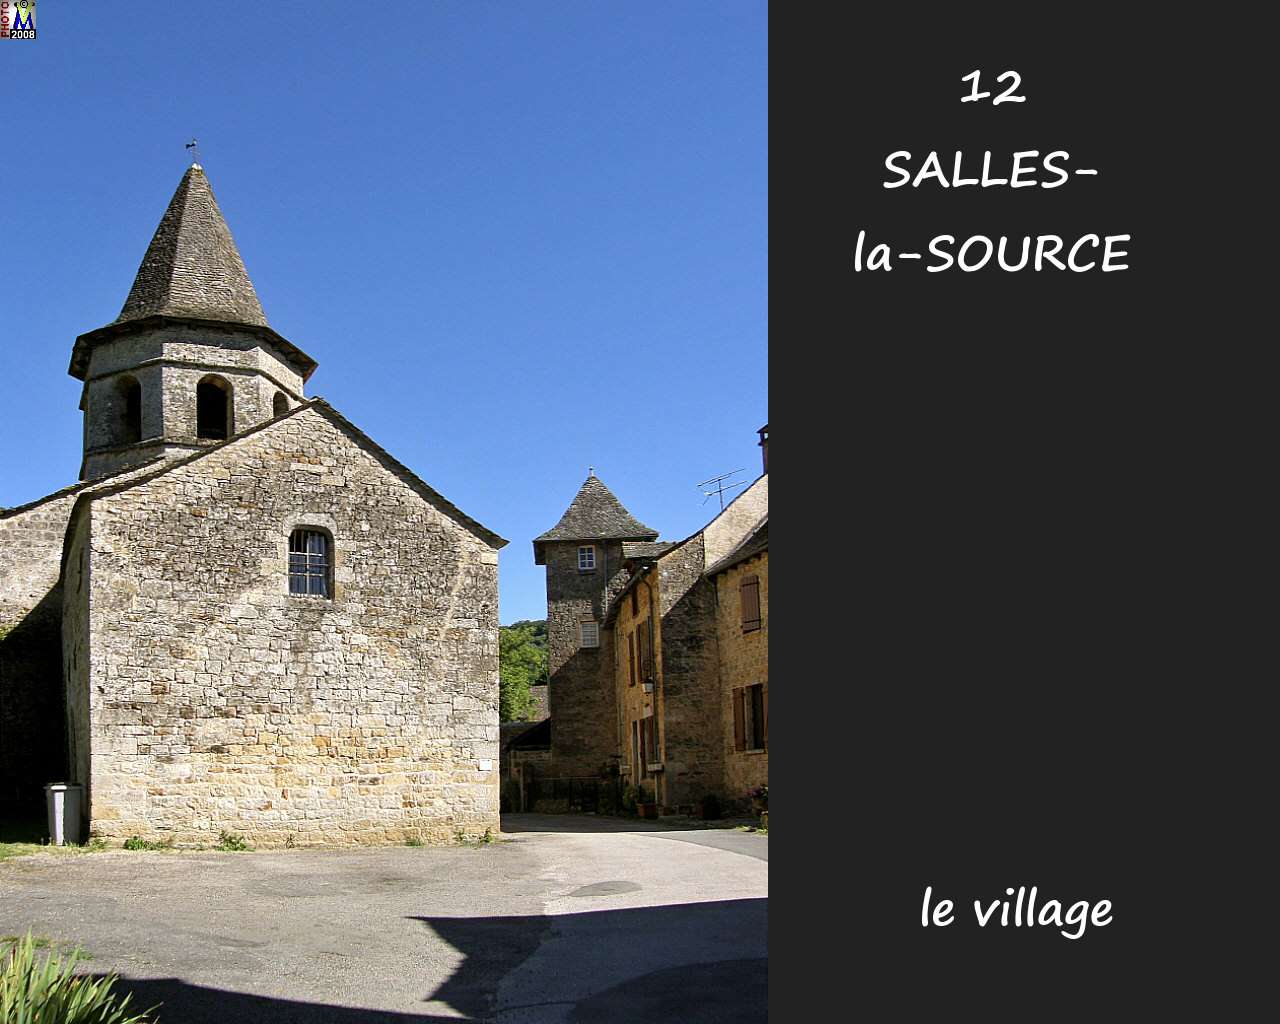 12SALLES-SOURCE_village_130.jpg